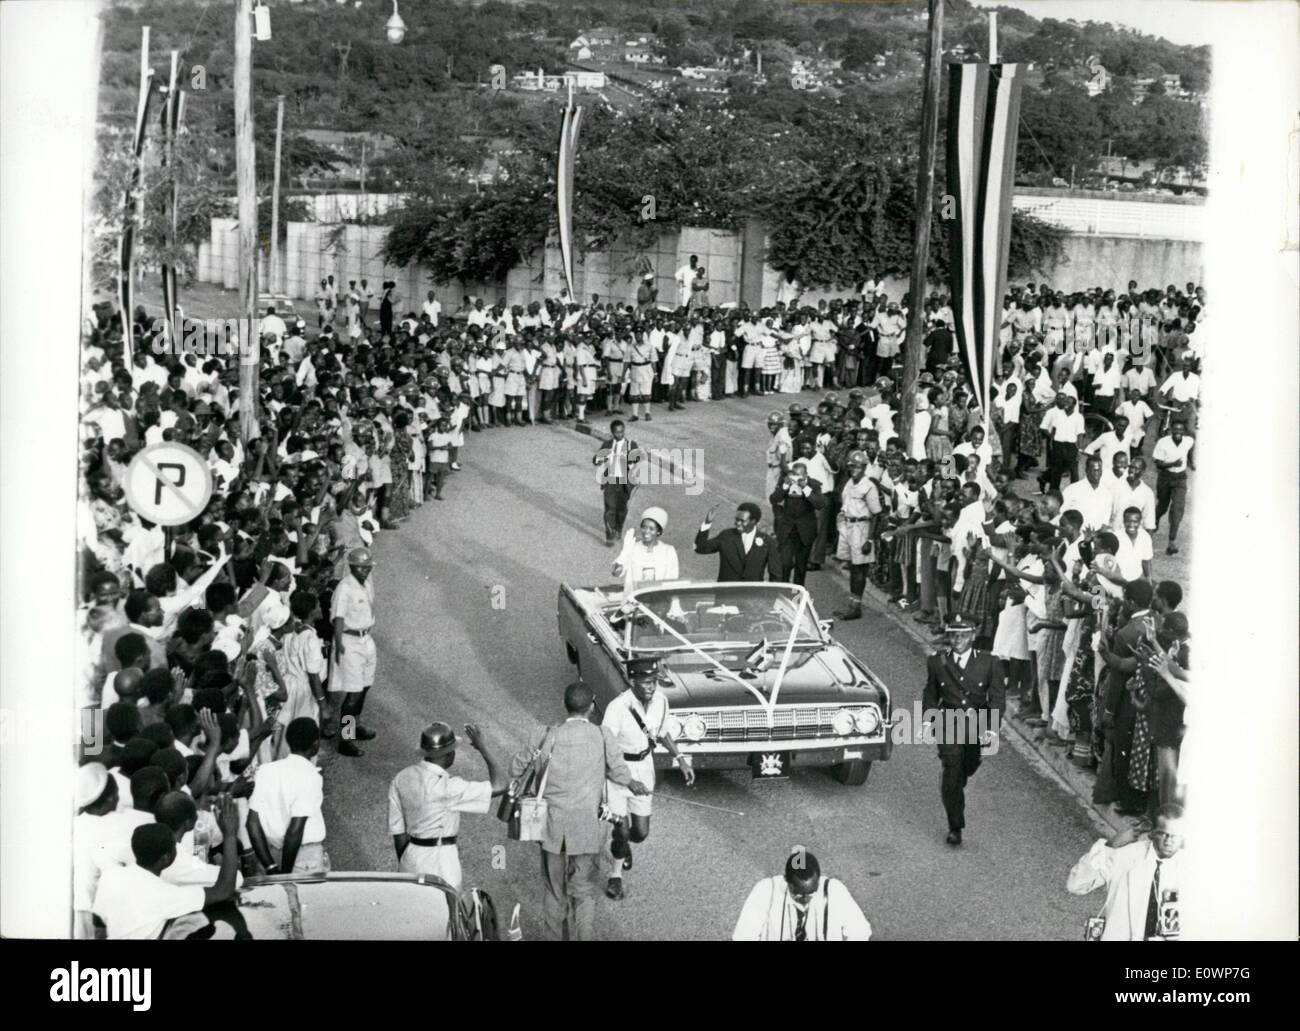 11. November 1963 - Beifall Hochzeit des Premierministers in Kampala, Uganda von den Zuschauern; Uganda ging mit einer landesweiten Demonstration von Loyalität und warm-hearted Affectuib Homosexuell, wie Prime Ministère Dr. Milton Obote in St. Pauls Cathedral - Namirembe, Kampala - Miss Mira Kalule verheiratet war. Foto zeigt Gesamtansicht als das glückliche Paar erkennen den Beifall der Zuschauer - fuhren sie nach ihrer Hochzeit in Kampala, Uganda von der Kathedrale entfernt. Stockfoto